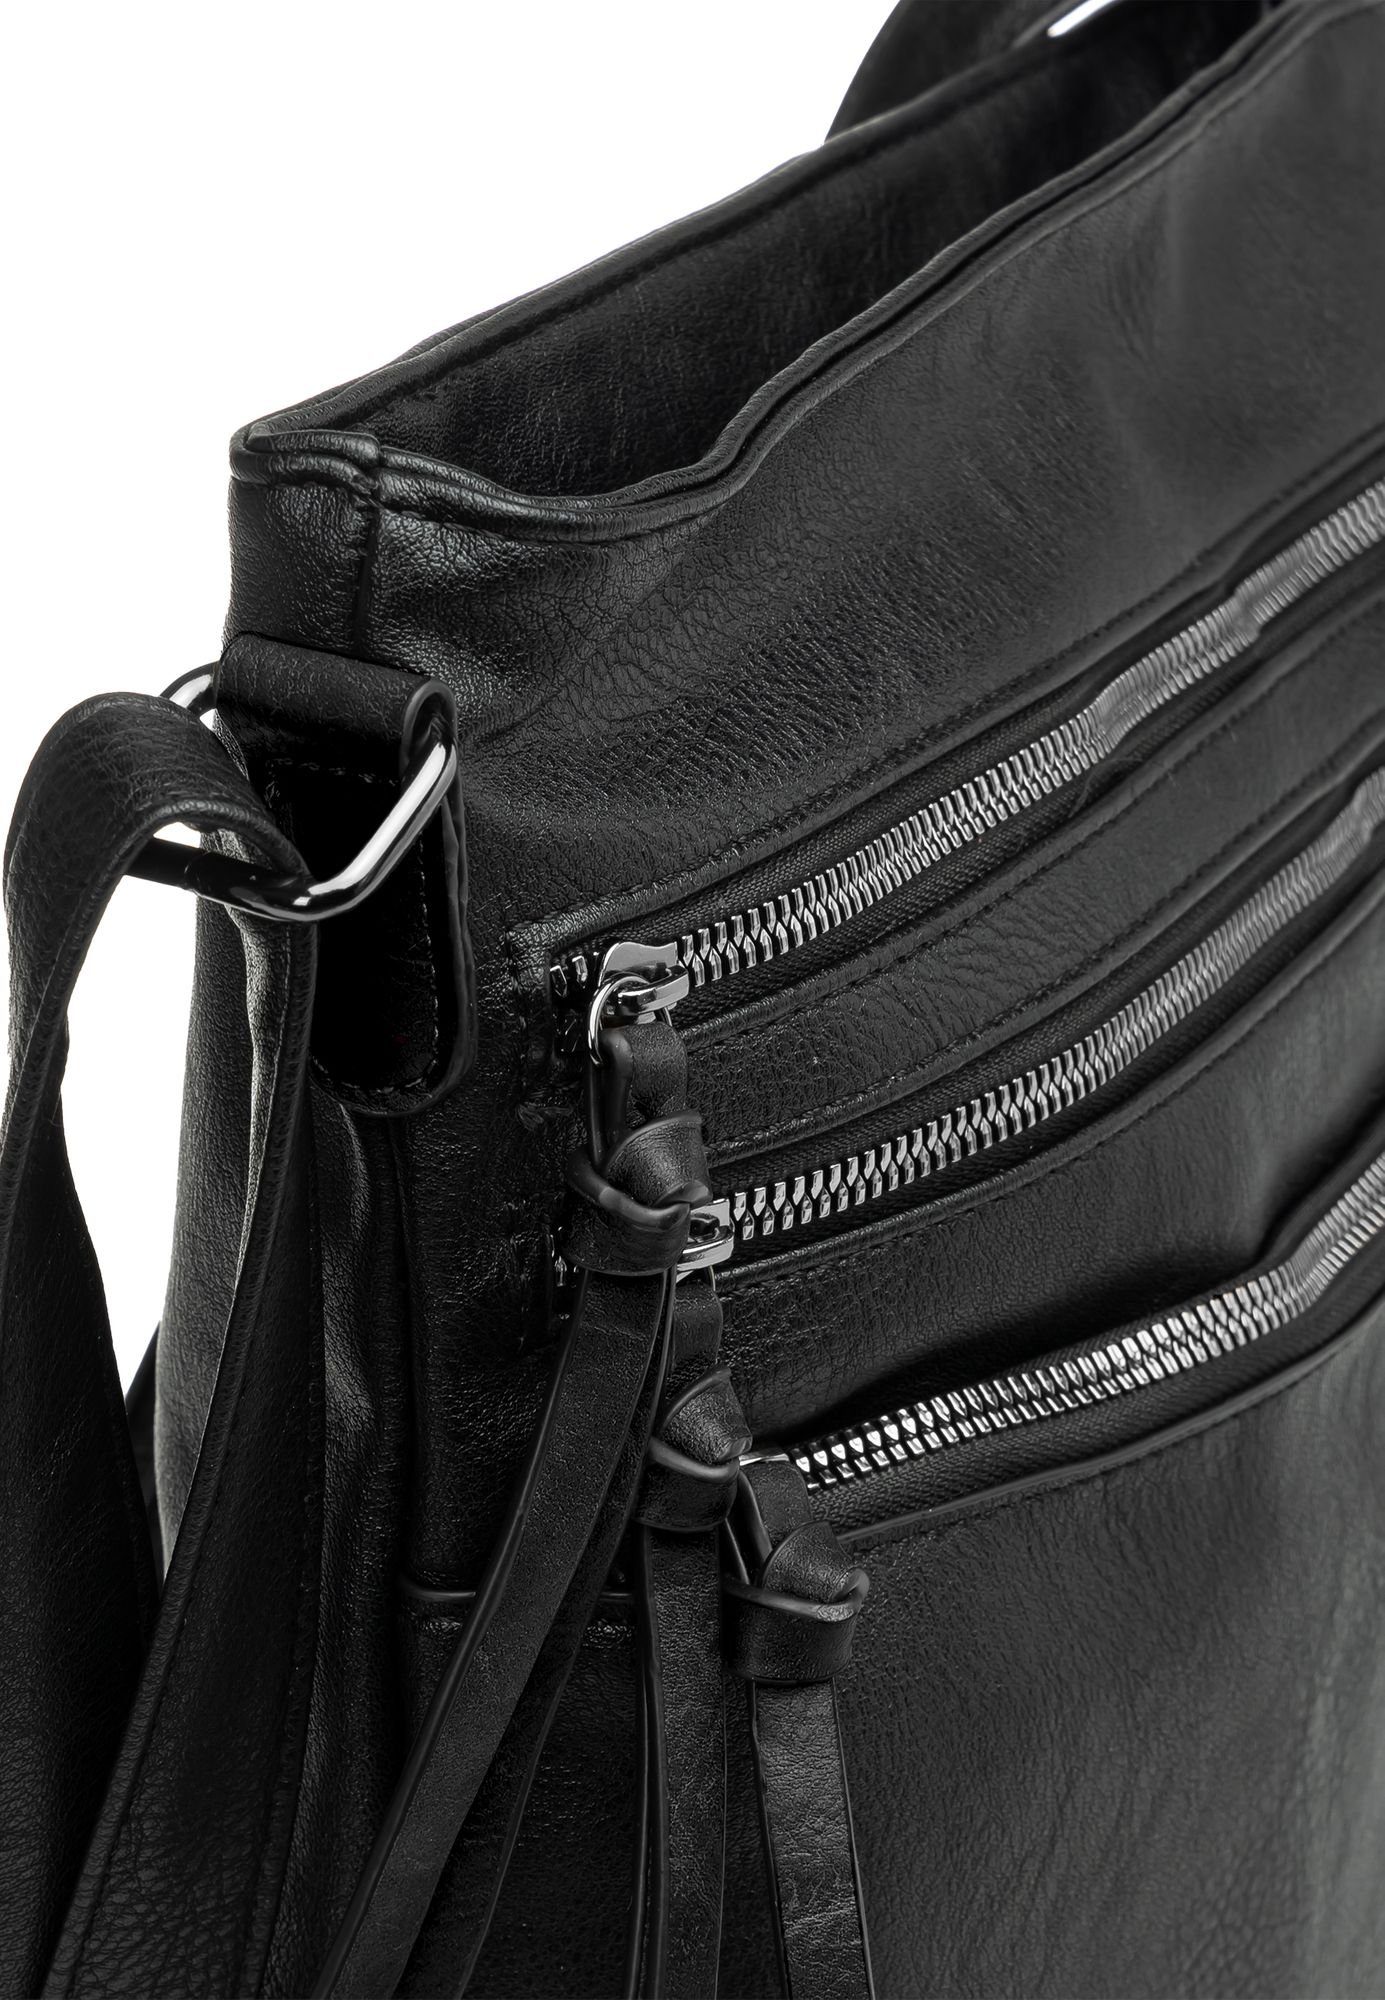 Umhängetasche schwarz elegante Crossbody sportlich Caspar Umhängetasche Damen mittelgroße TS1071 Bag